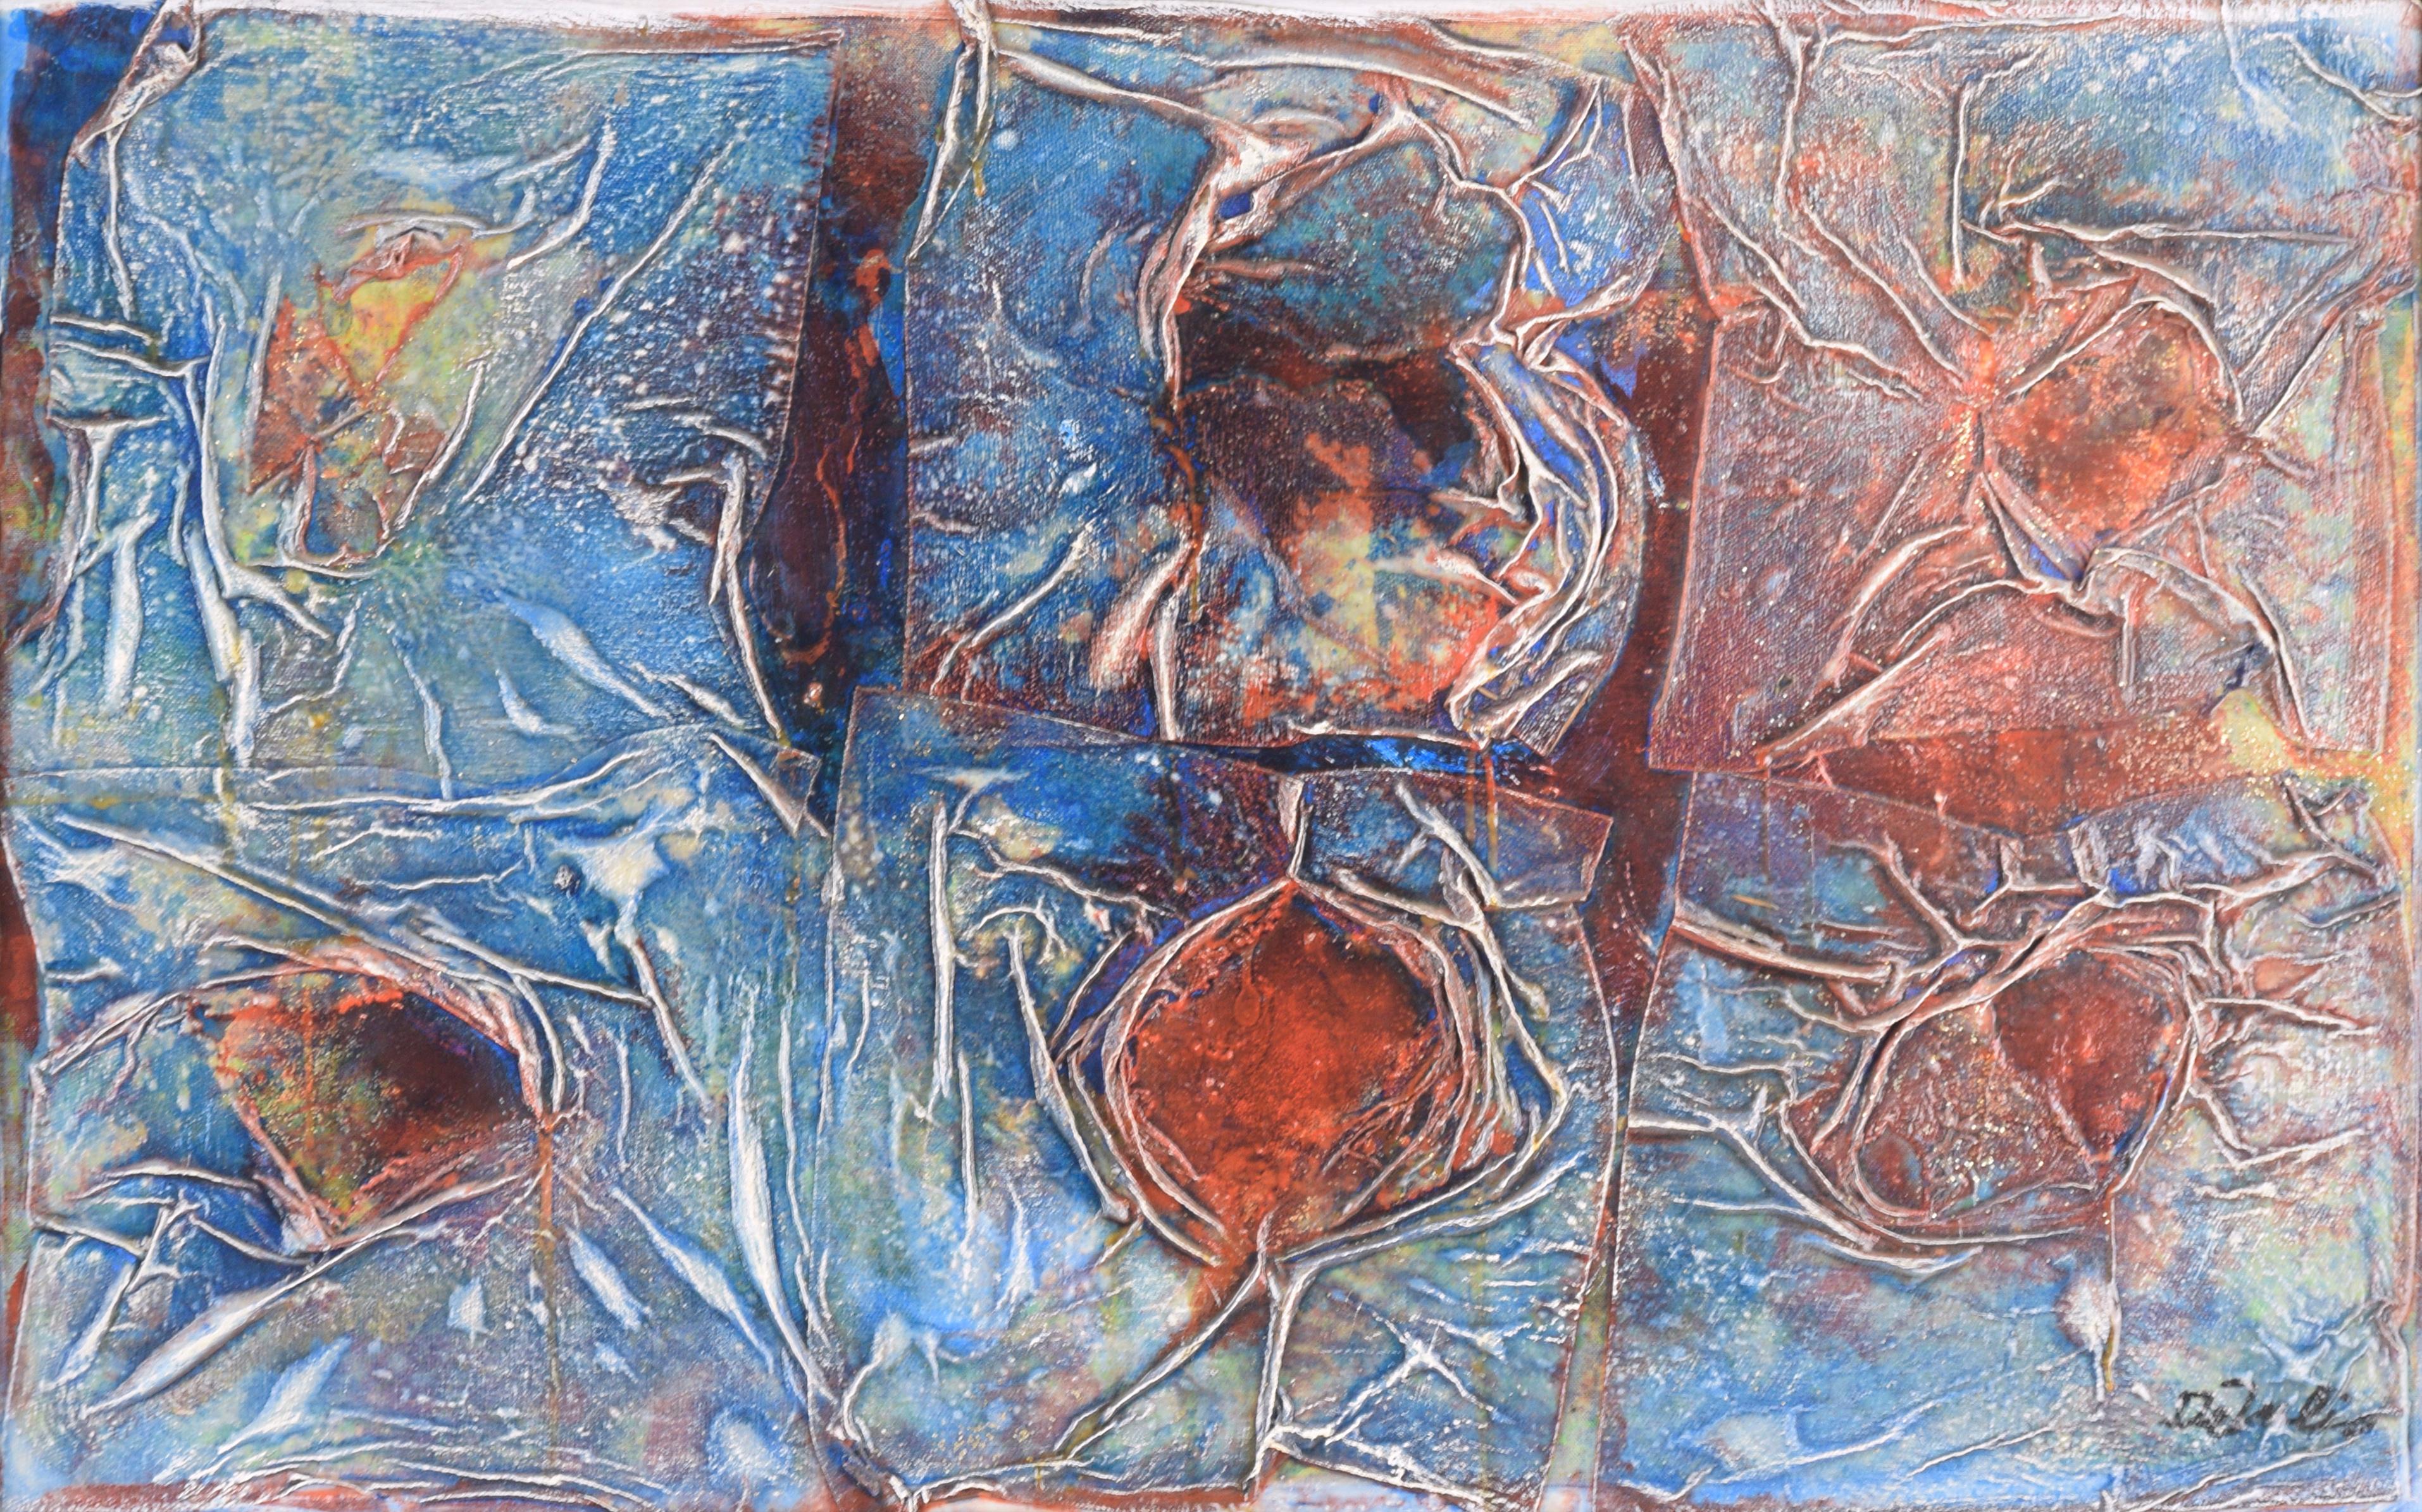 Ripples in Space - Composition abstraite peinture à l'huile originale - Abstrait Mixed Media Art par Unknown